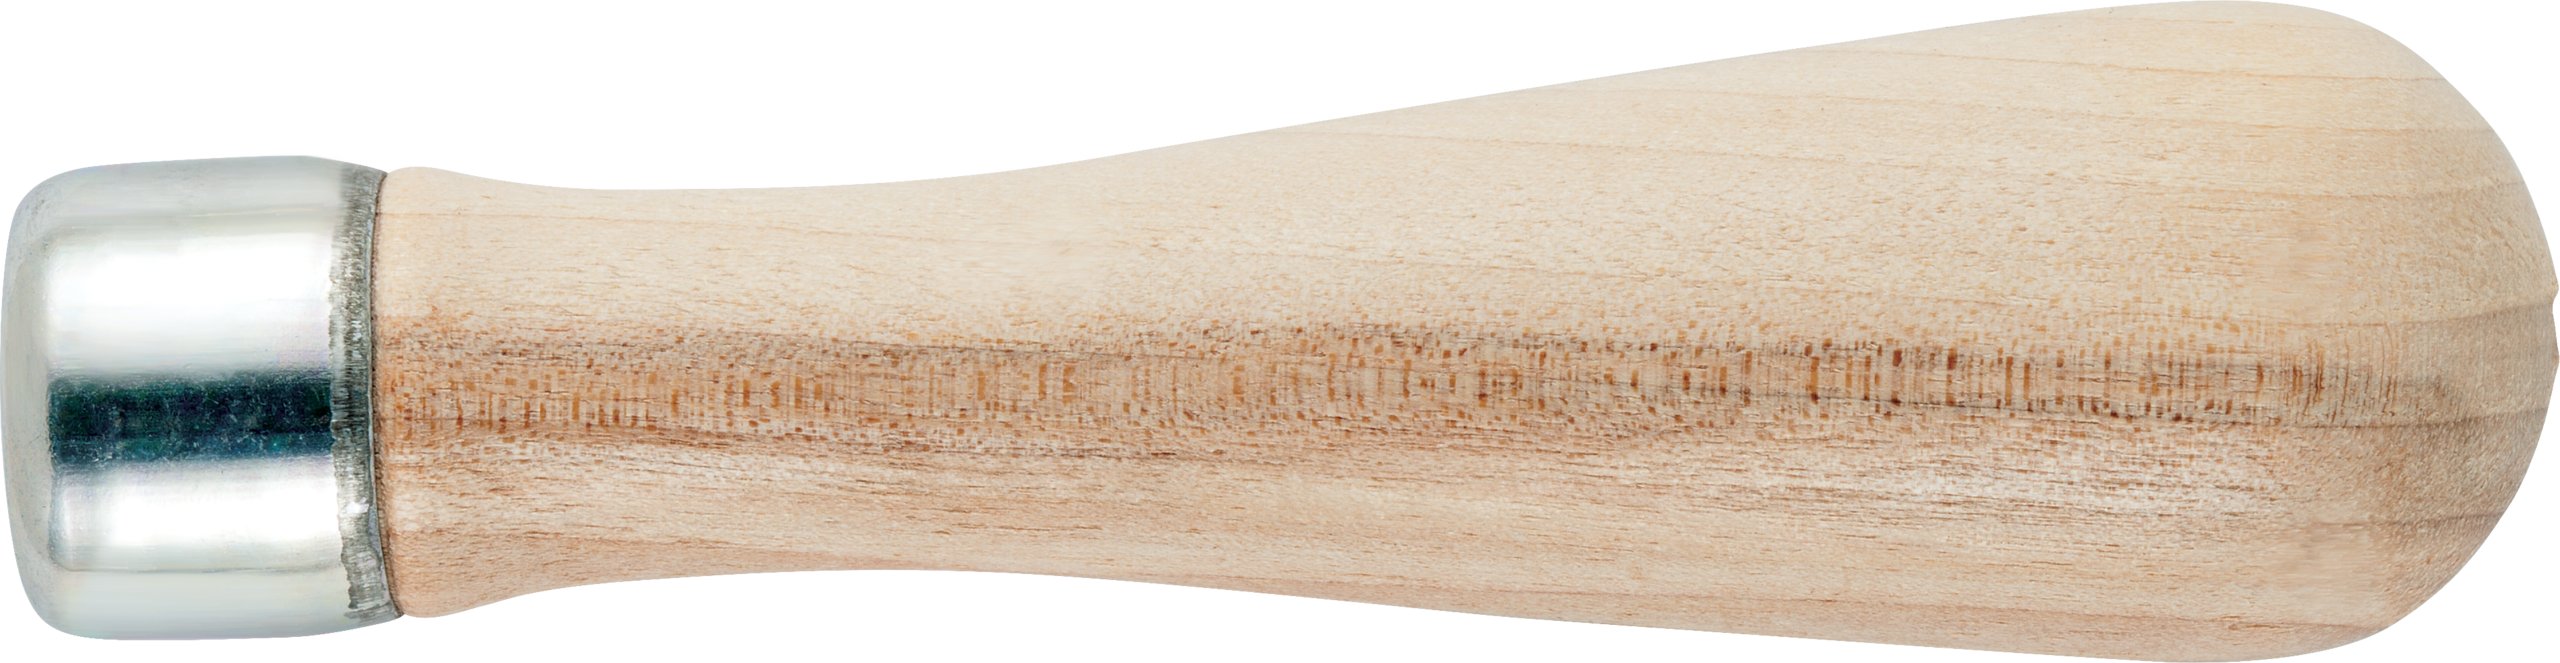 Skroo-Zon Wooden Handle for 6